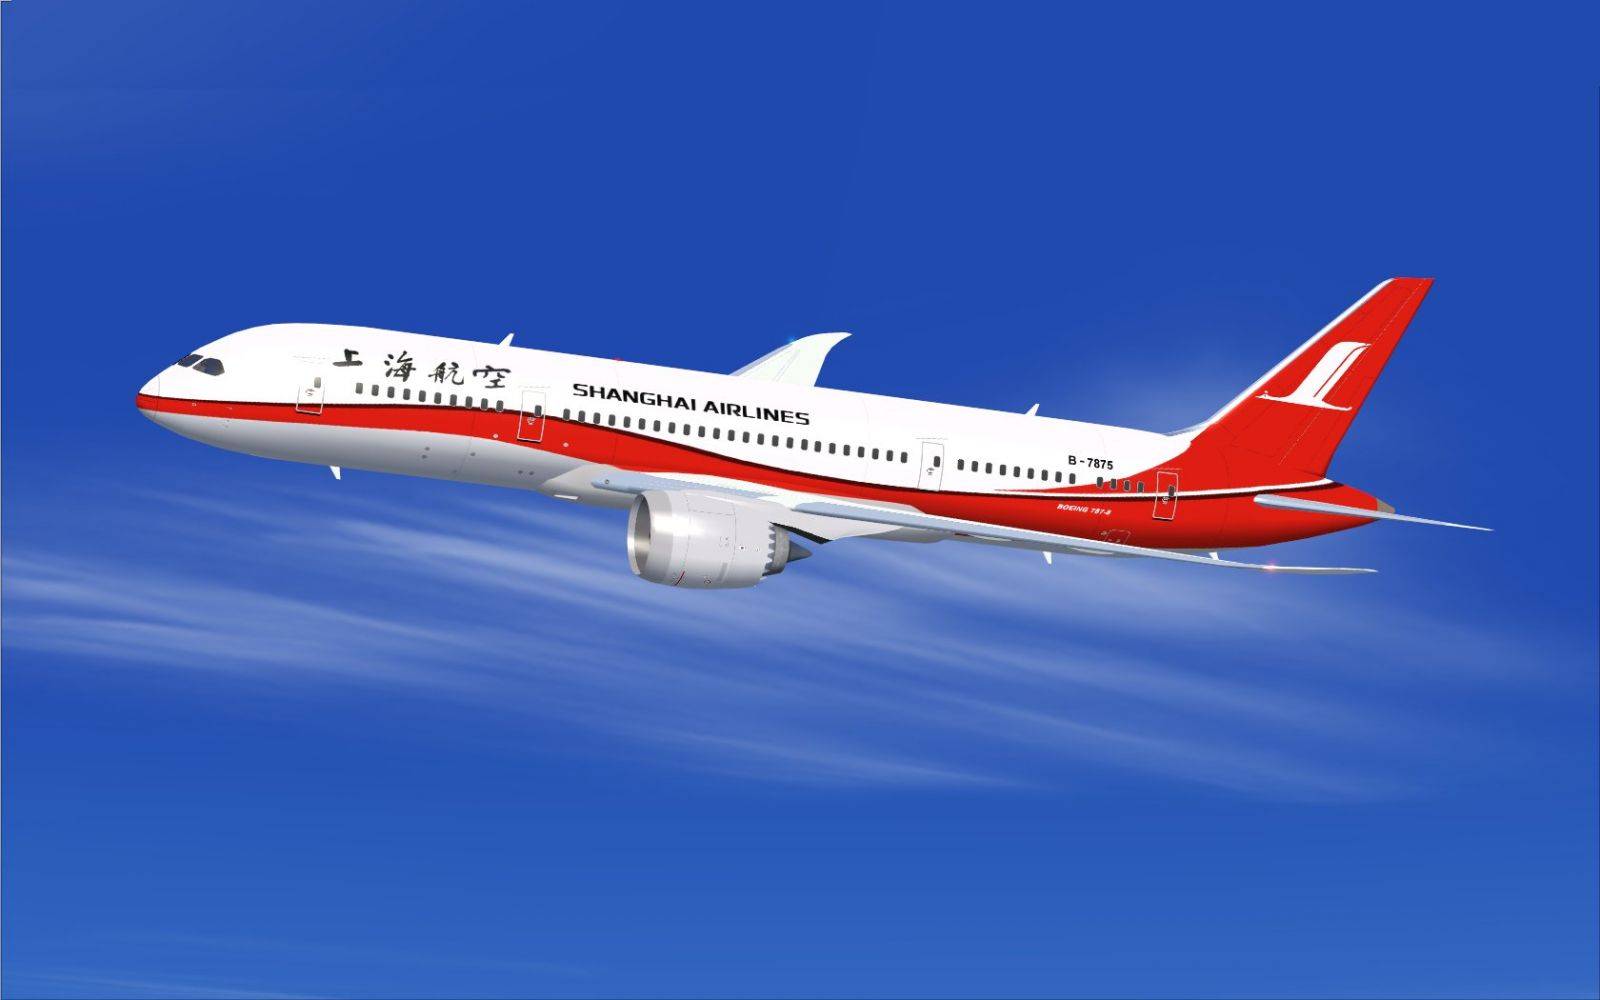 China eastern airlines (чайна истерн эйрлайнс): обзор авиакомпании, контактные данные, регистрация на рейс онлайн